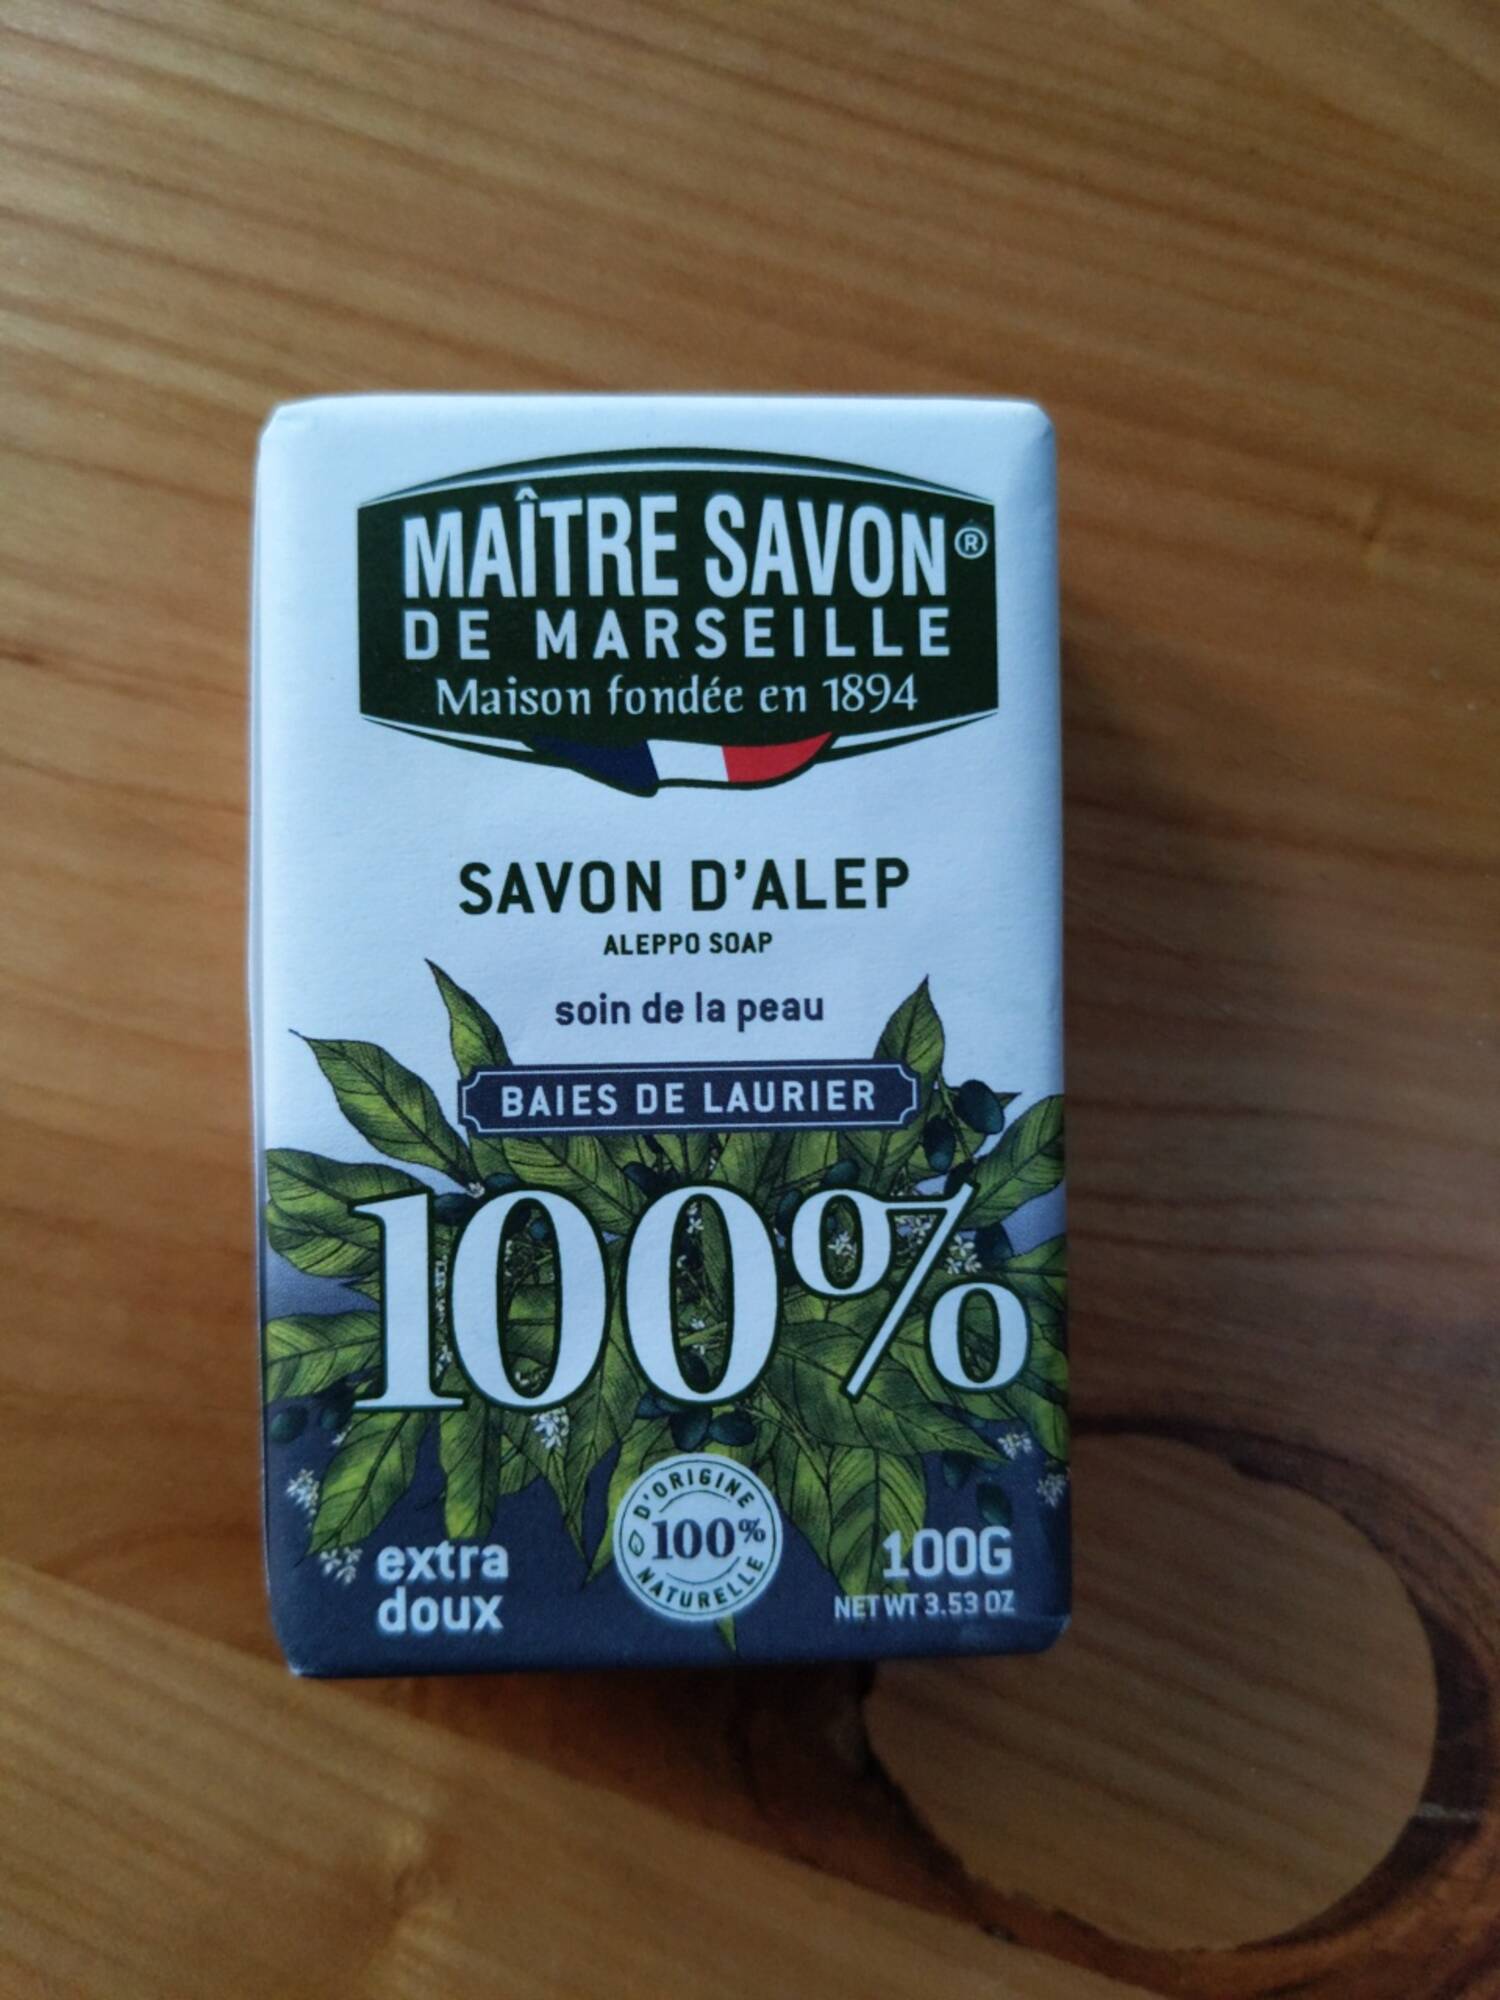 MAÎTRE SAVON DE MARSEILLE - Baies de laurier - Savon d'alep extra doux